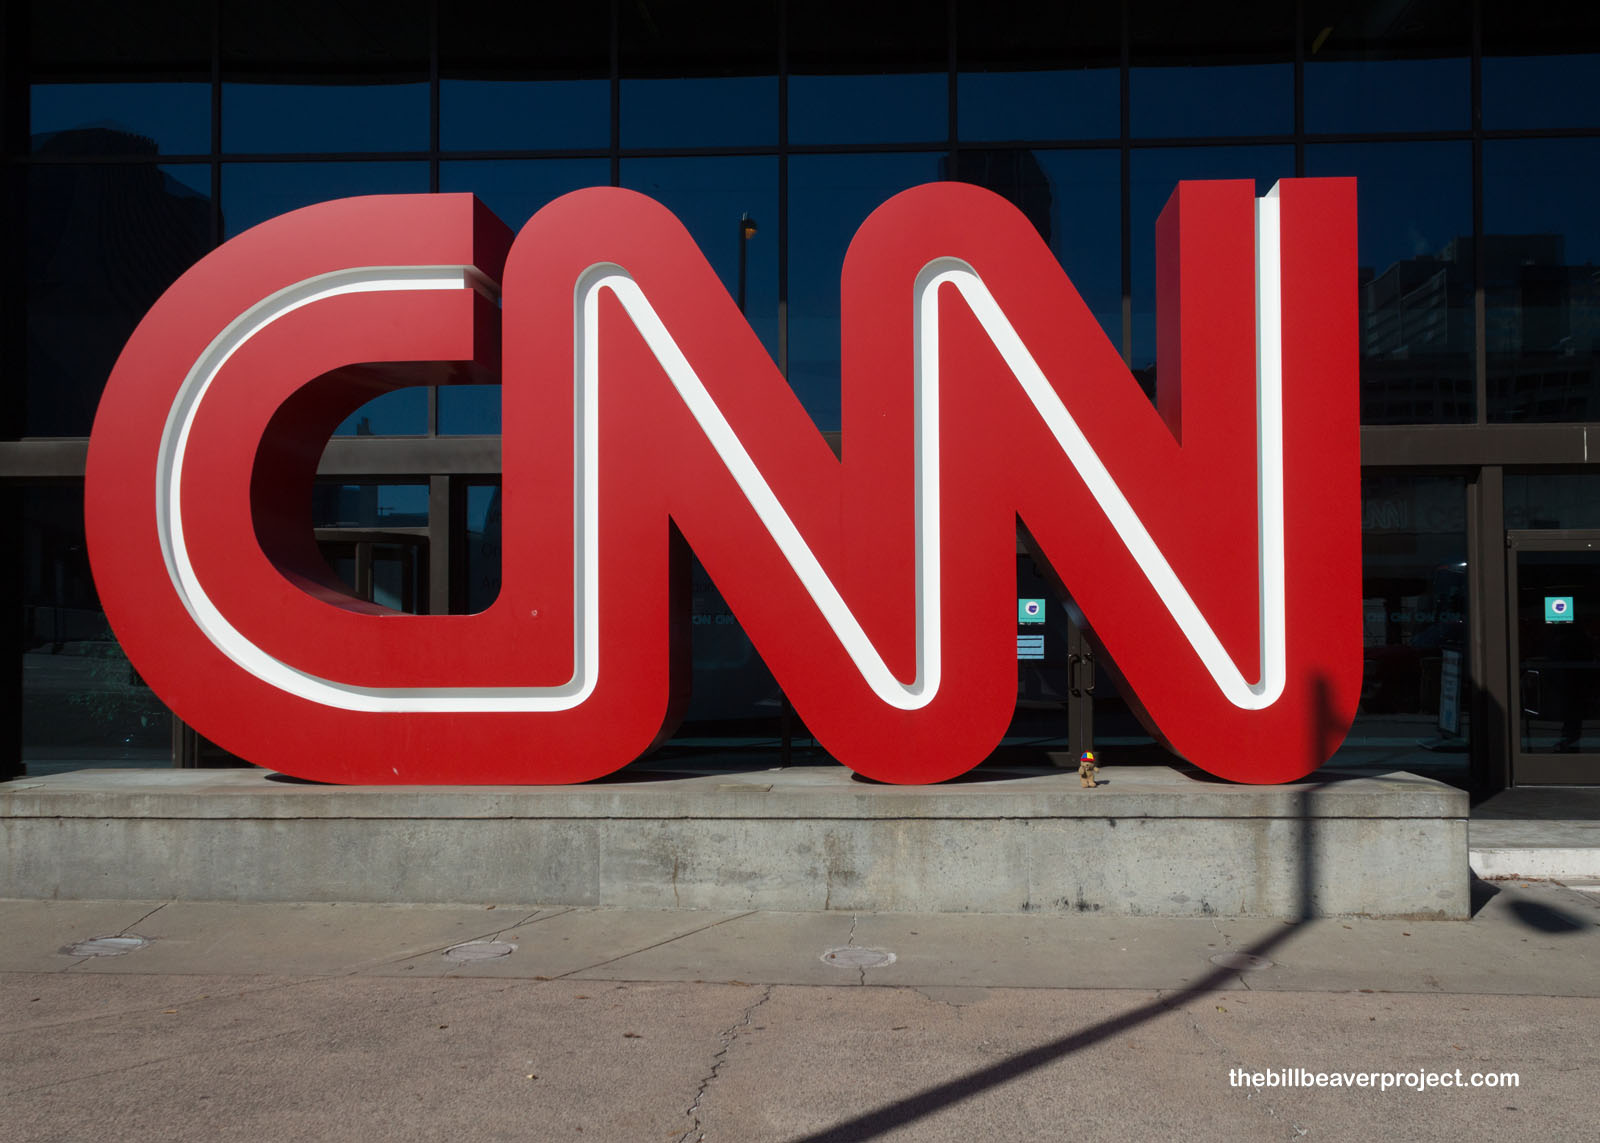 The famous CNN logo!